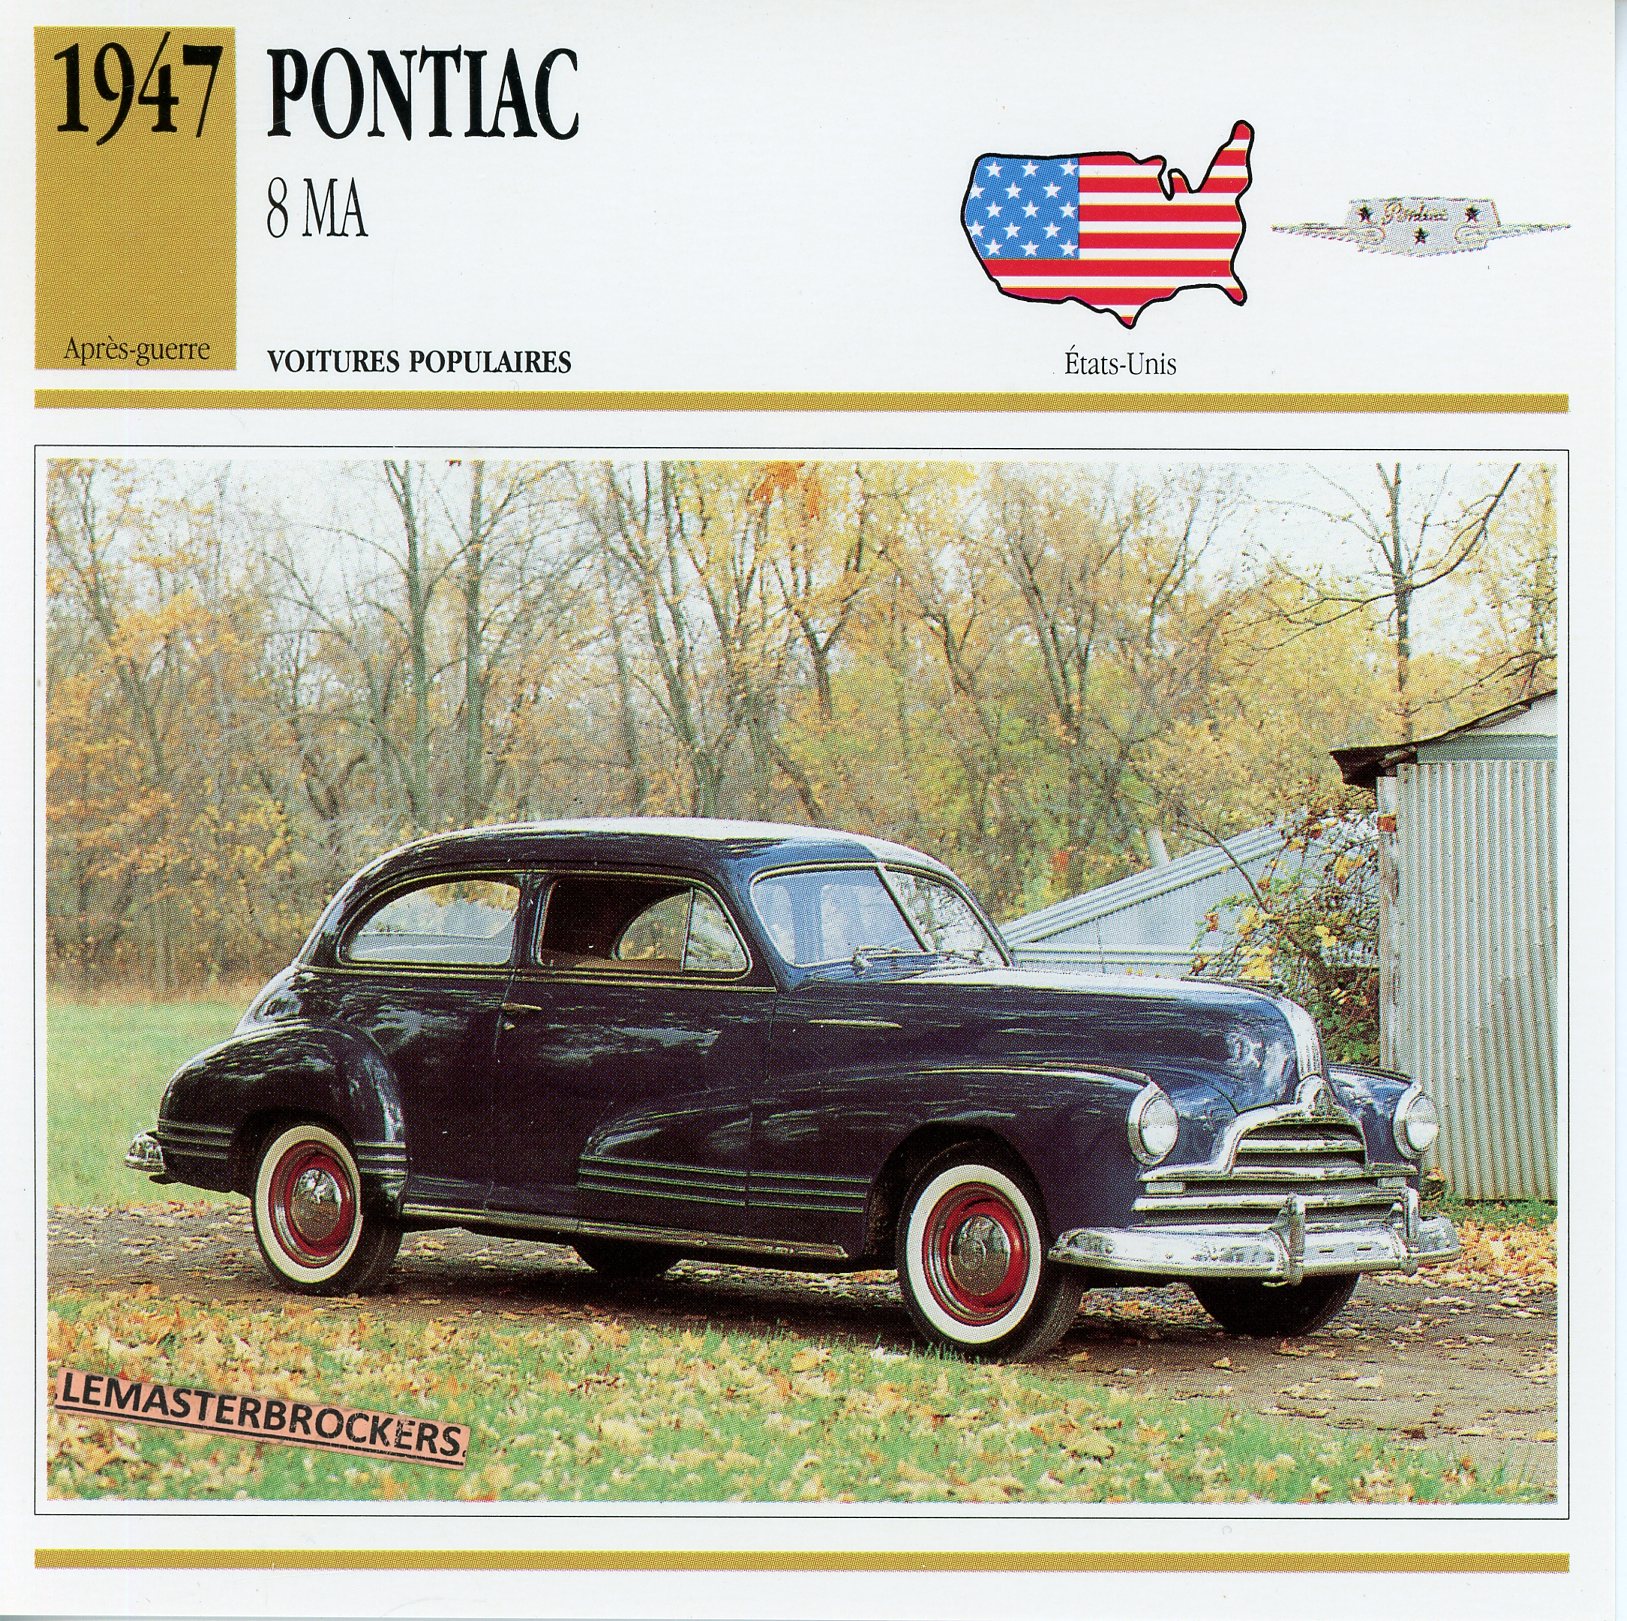 PONTIAC 8 MA 1947 - FICHE AUTO ATLAS ÉDITION